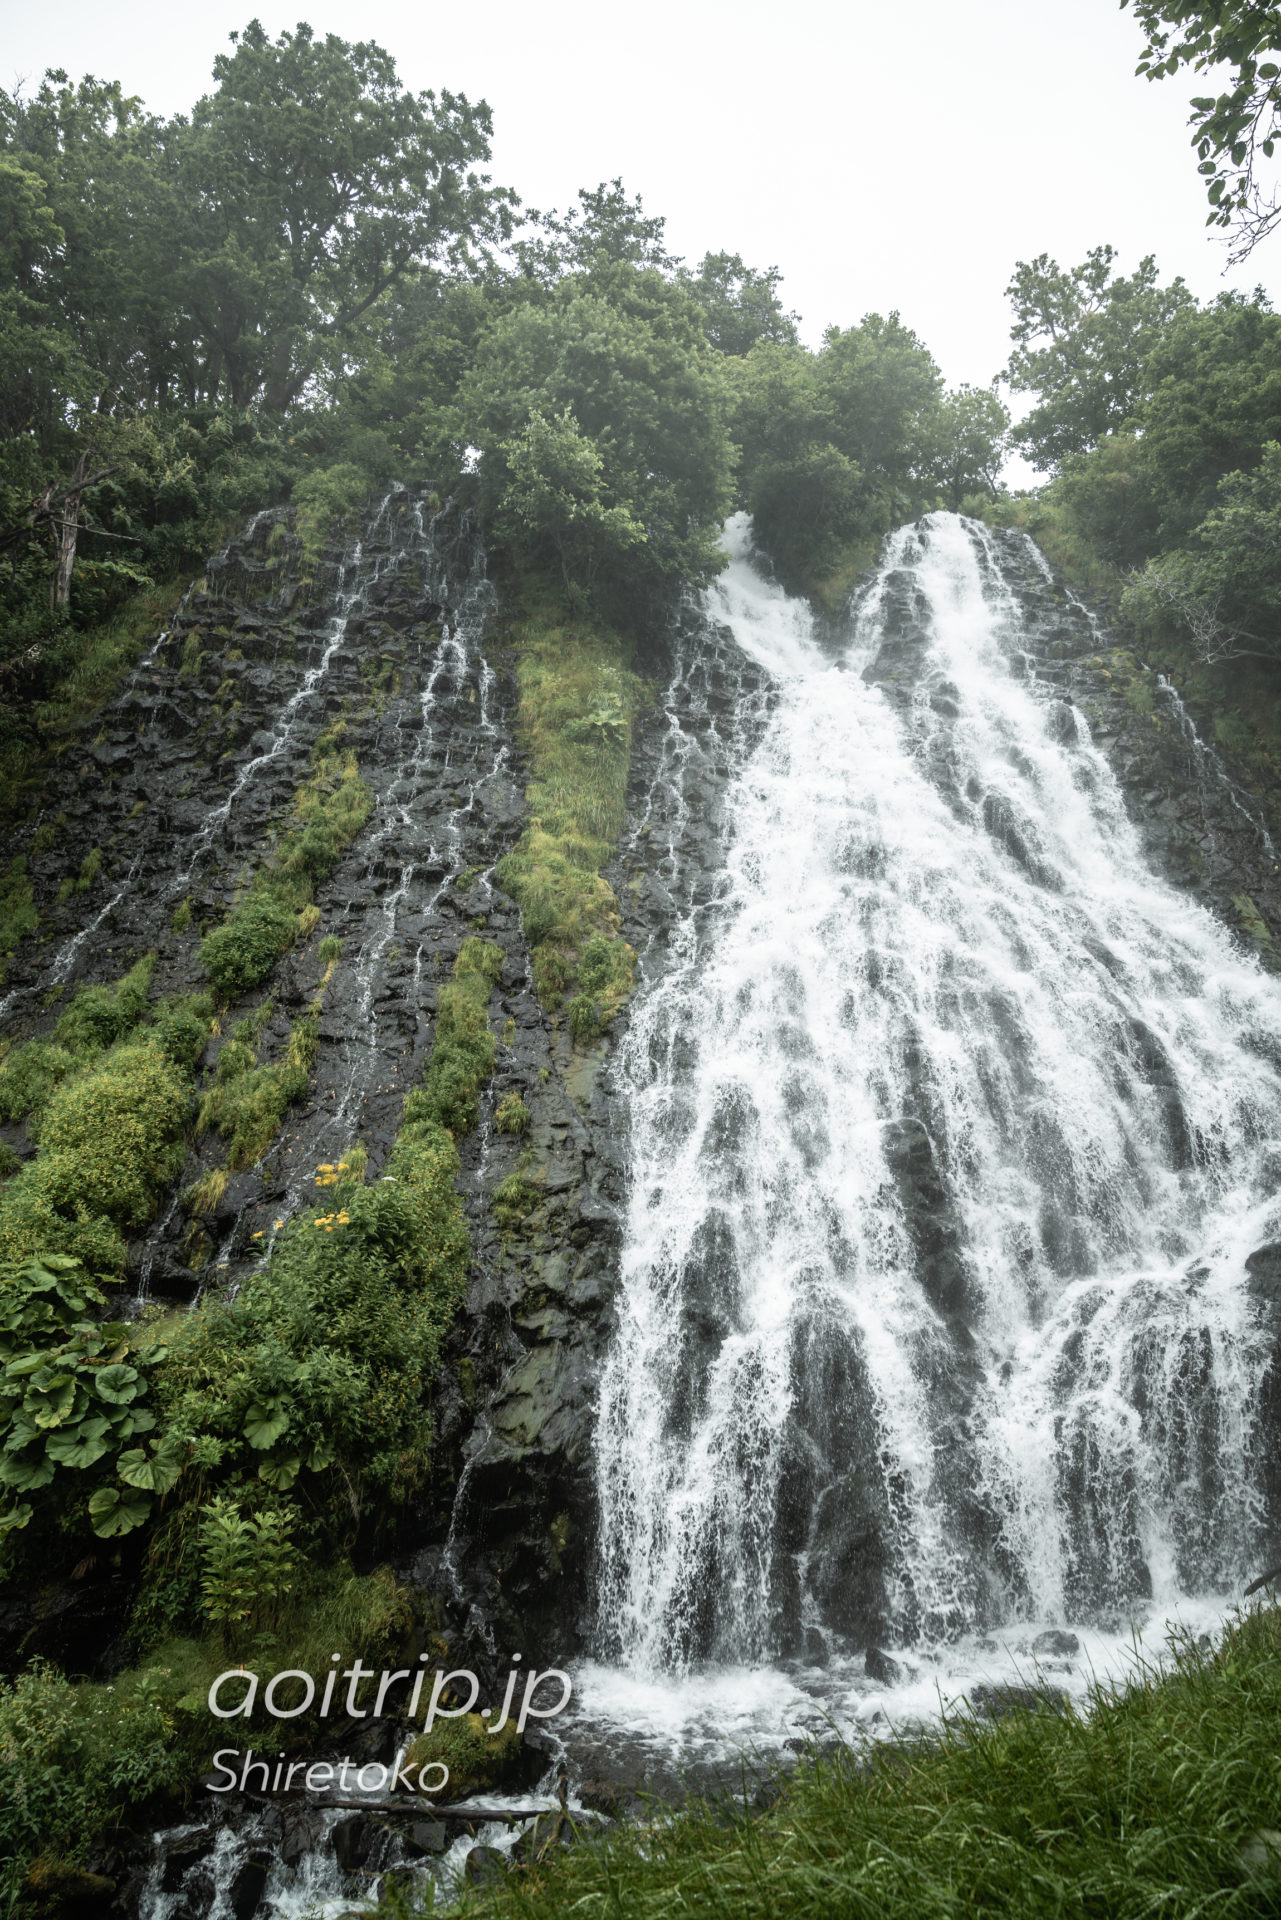 知床 オシンコシンの滝｜Oshinkoshin Falls, Shiretoko